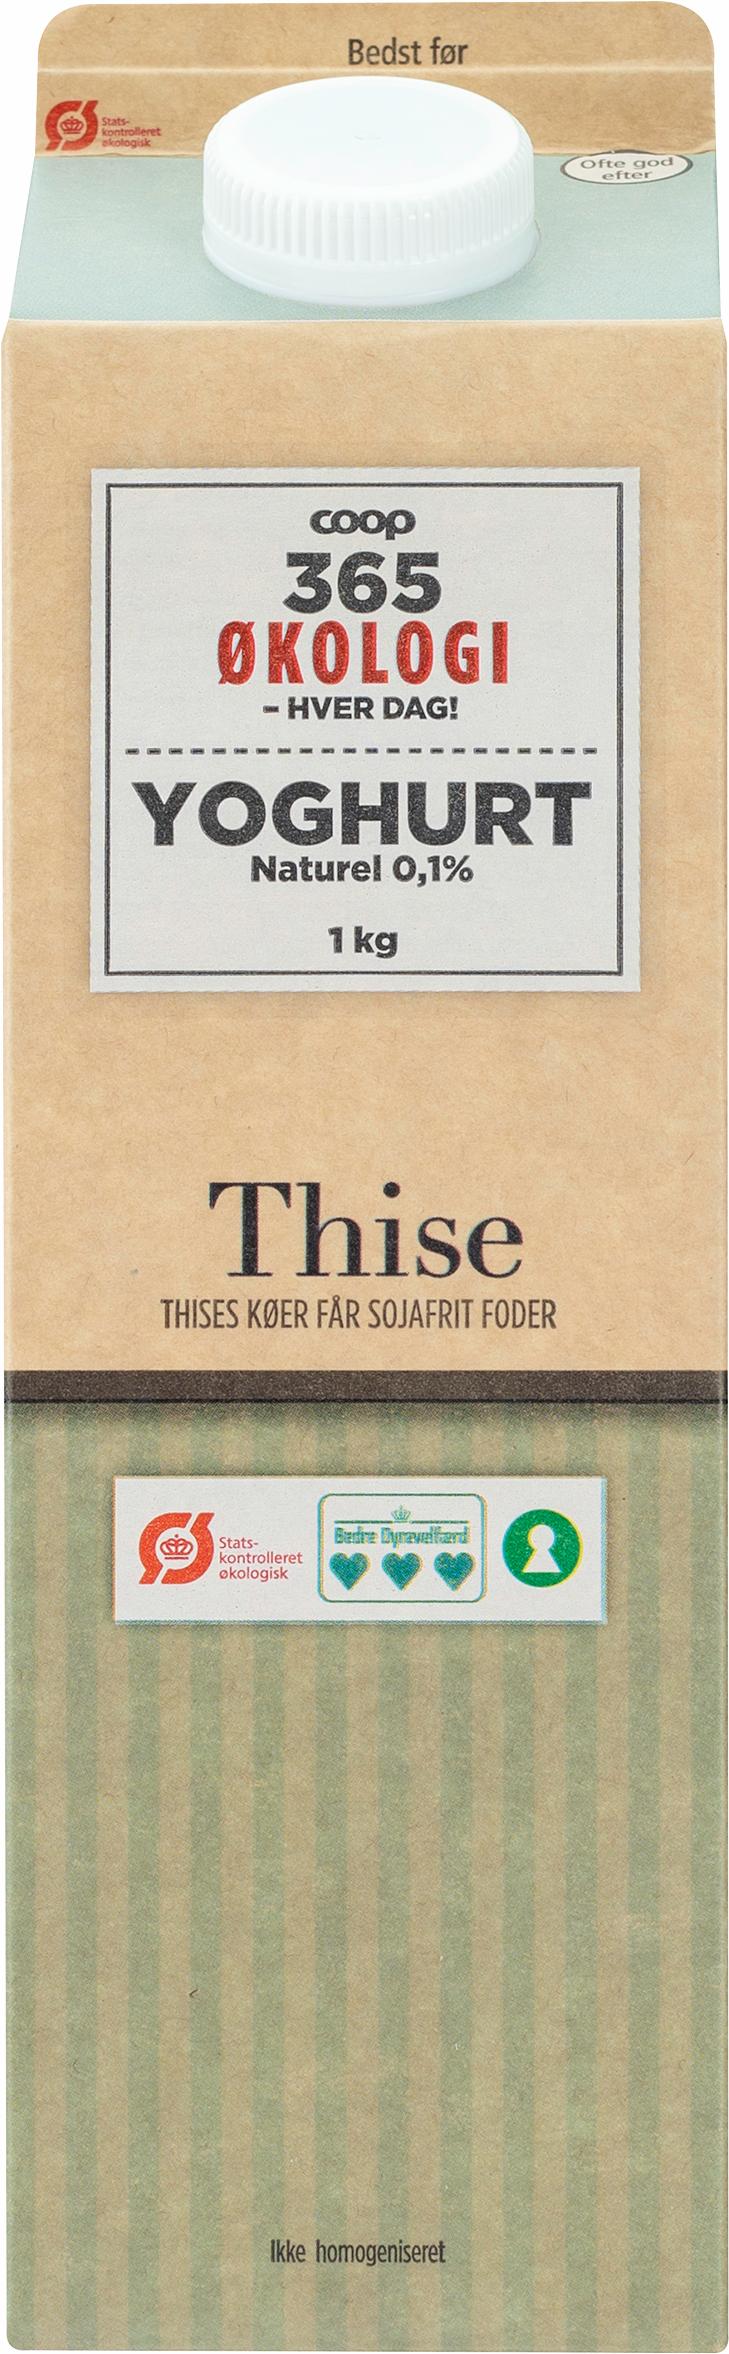 365 Øko Yoghurt Naturel 0,1% 1000g